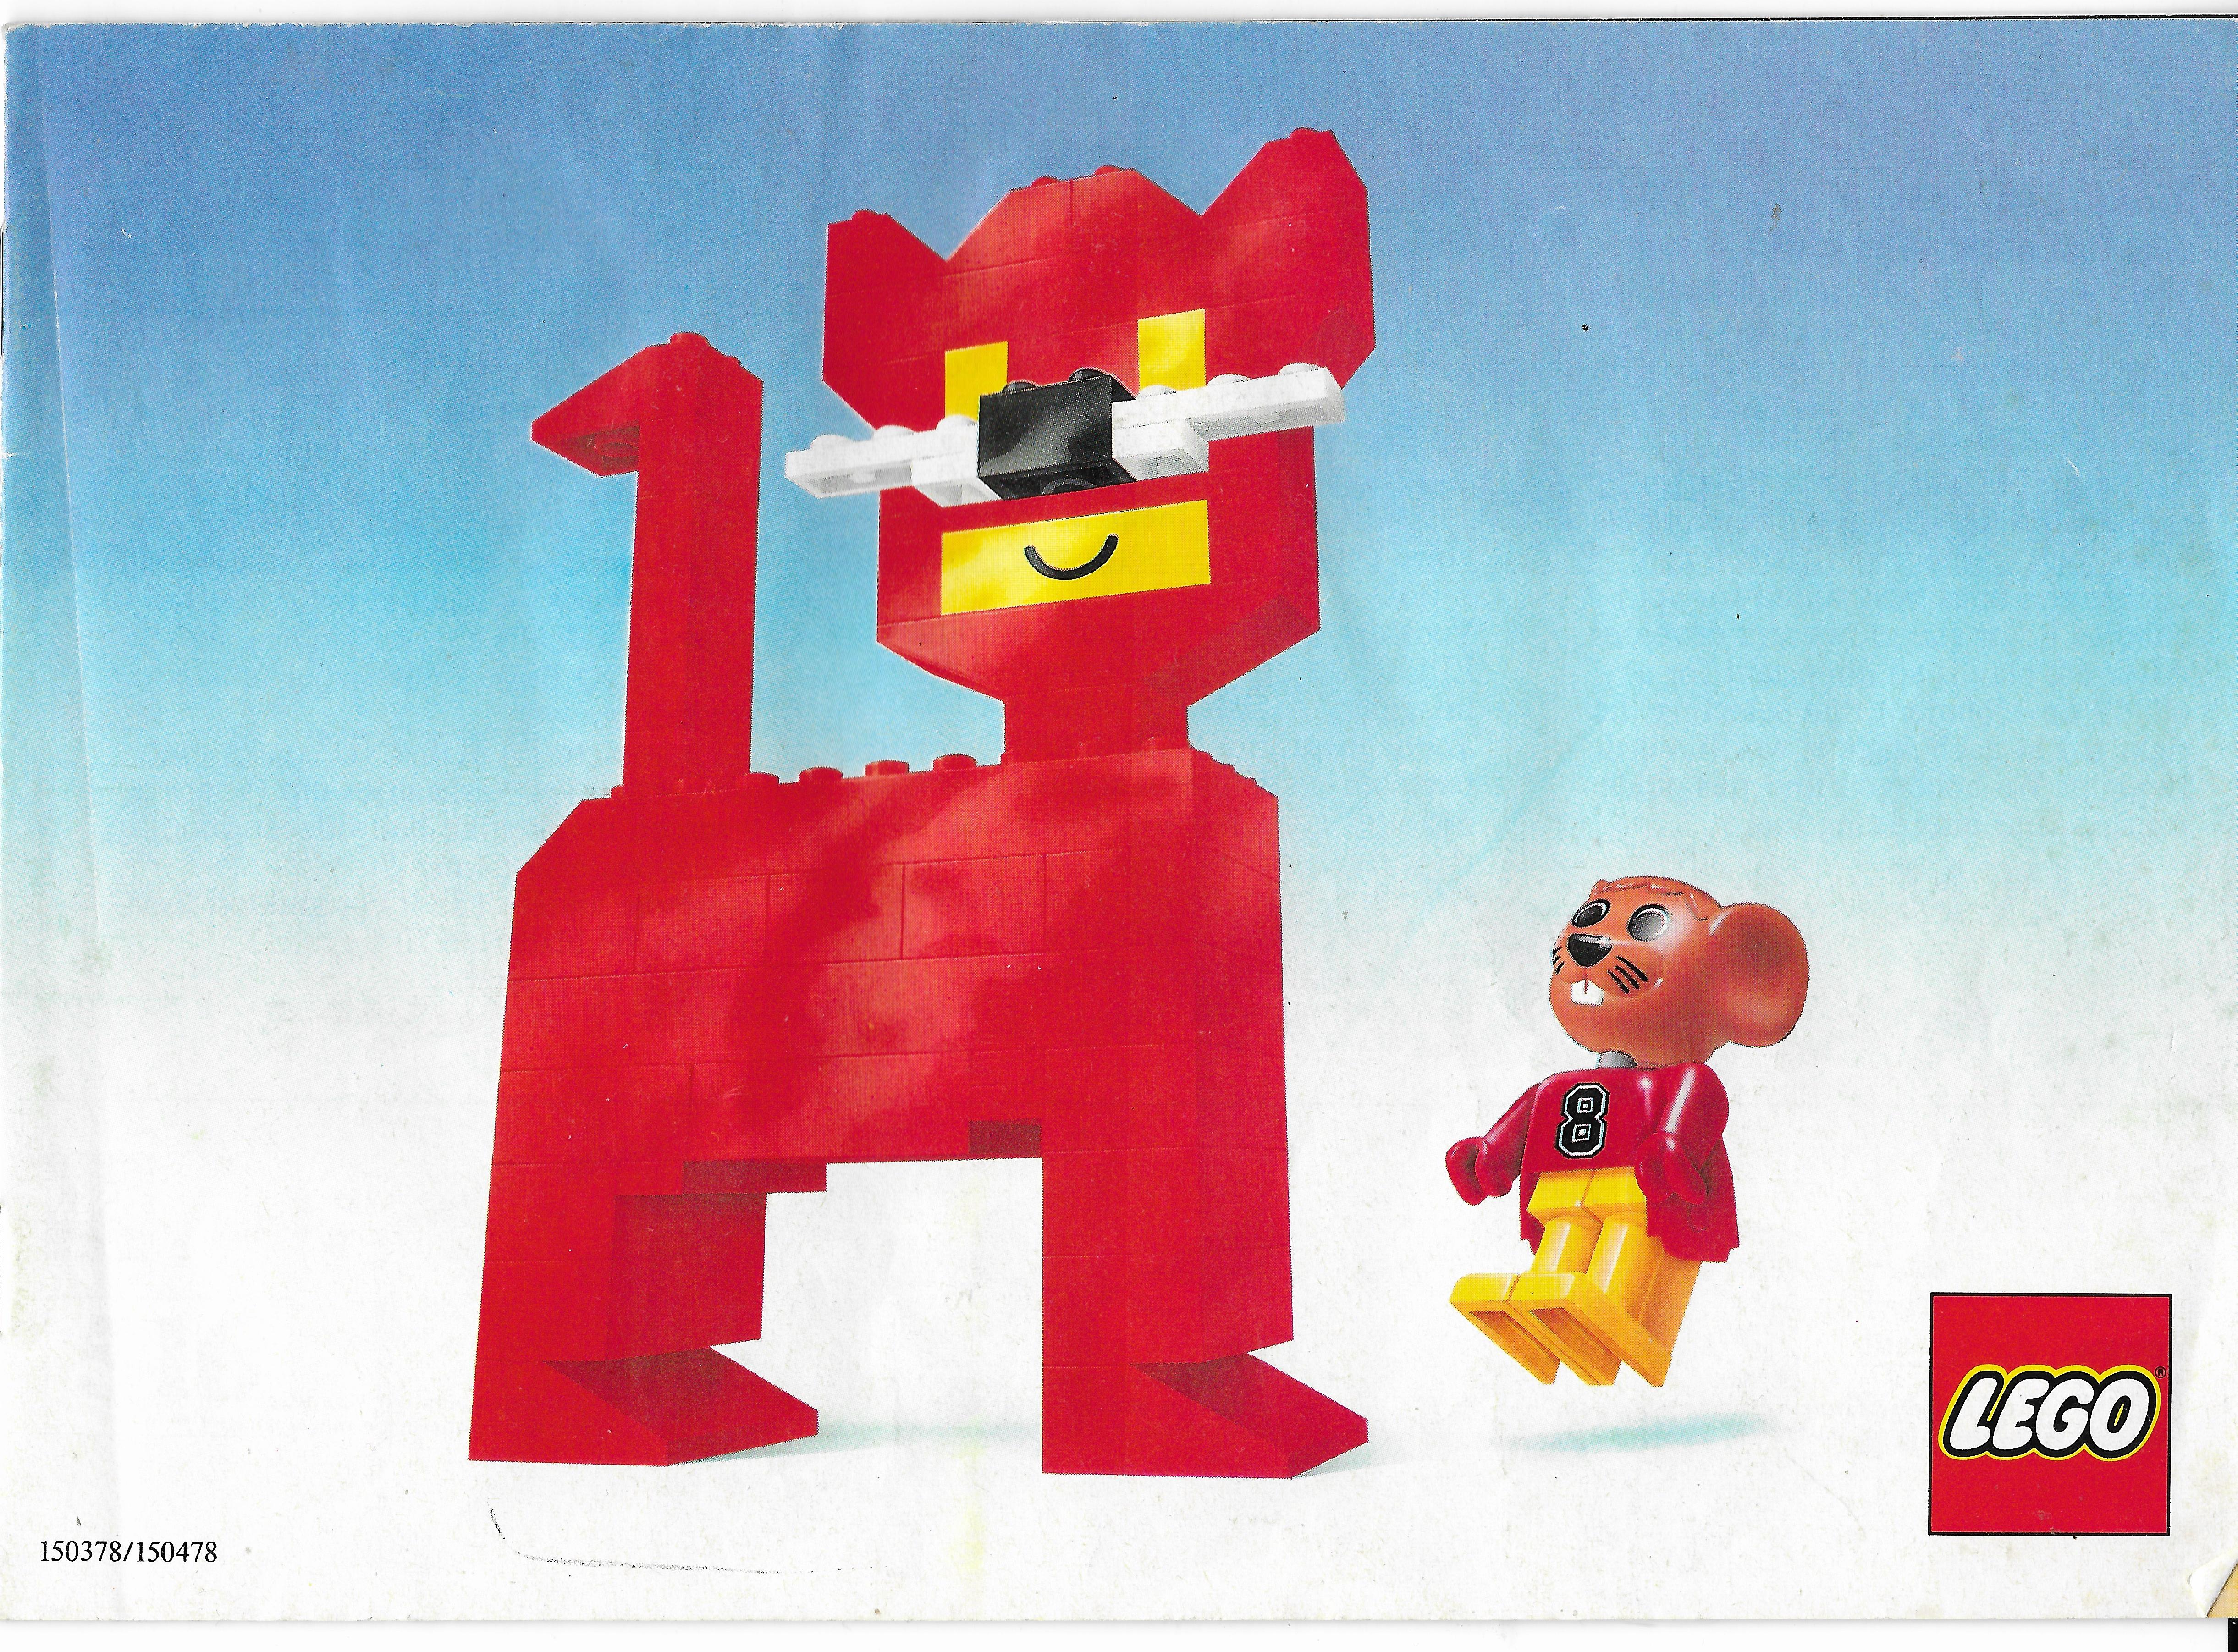 Nyugat-európai Lego katalógus 1987-ből